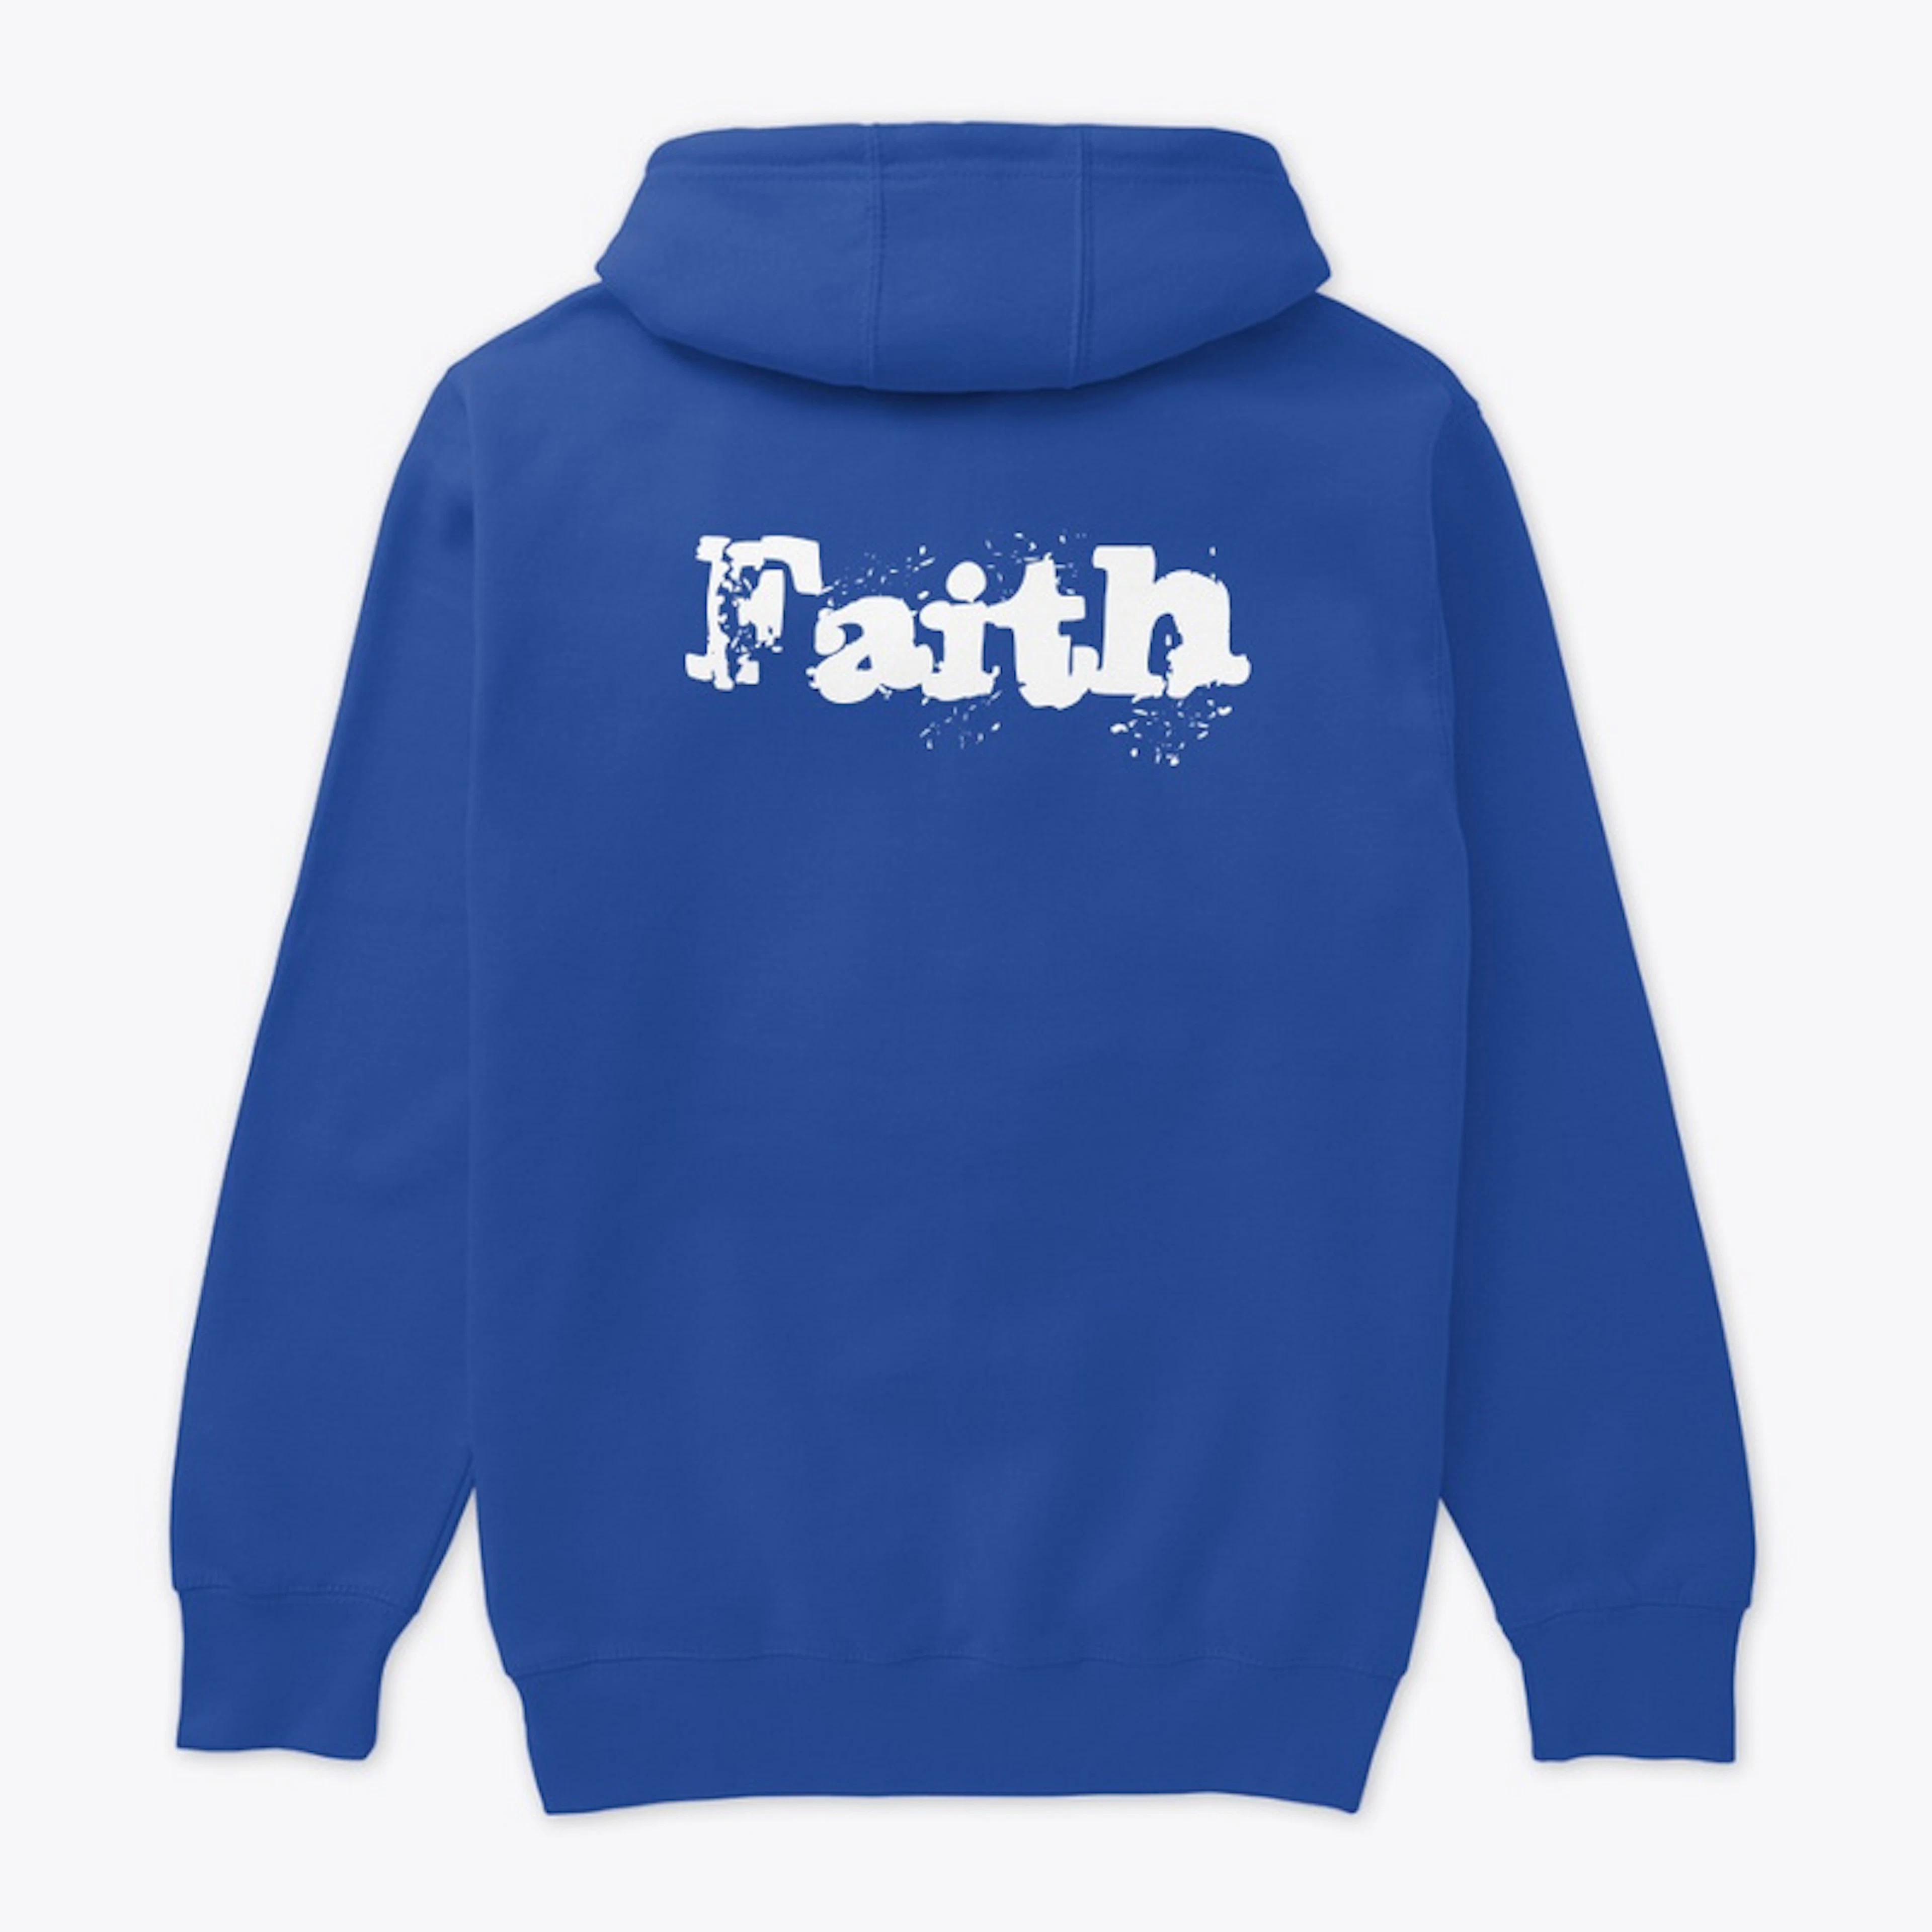 By faith 